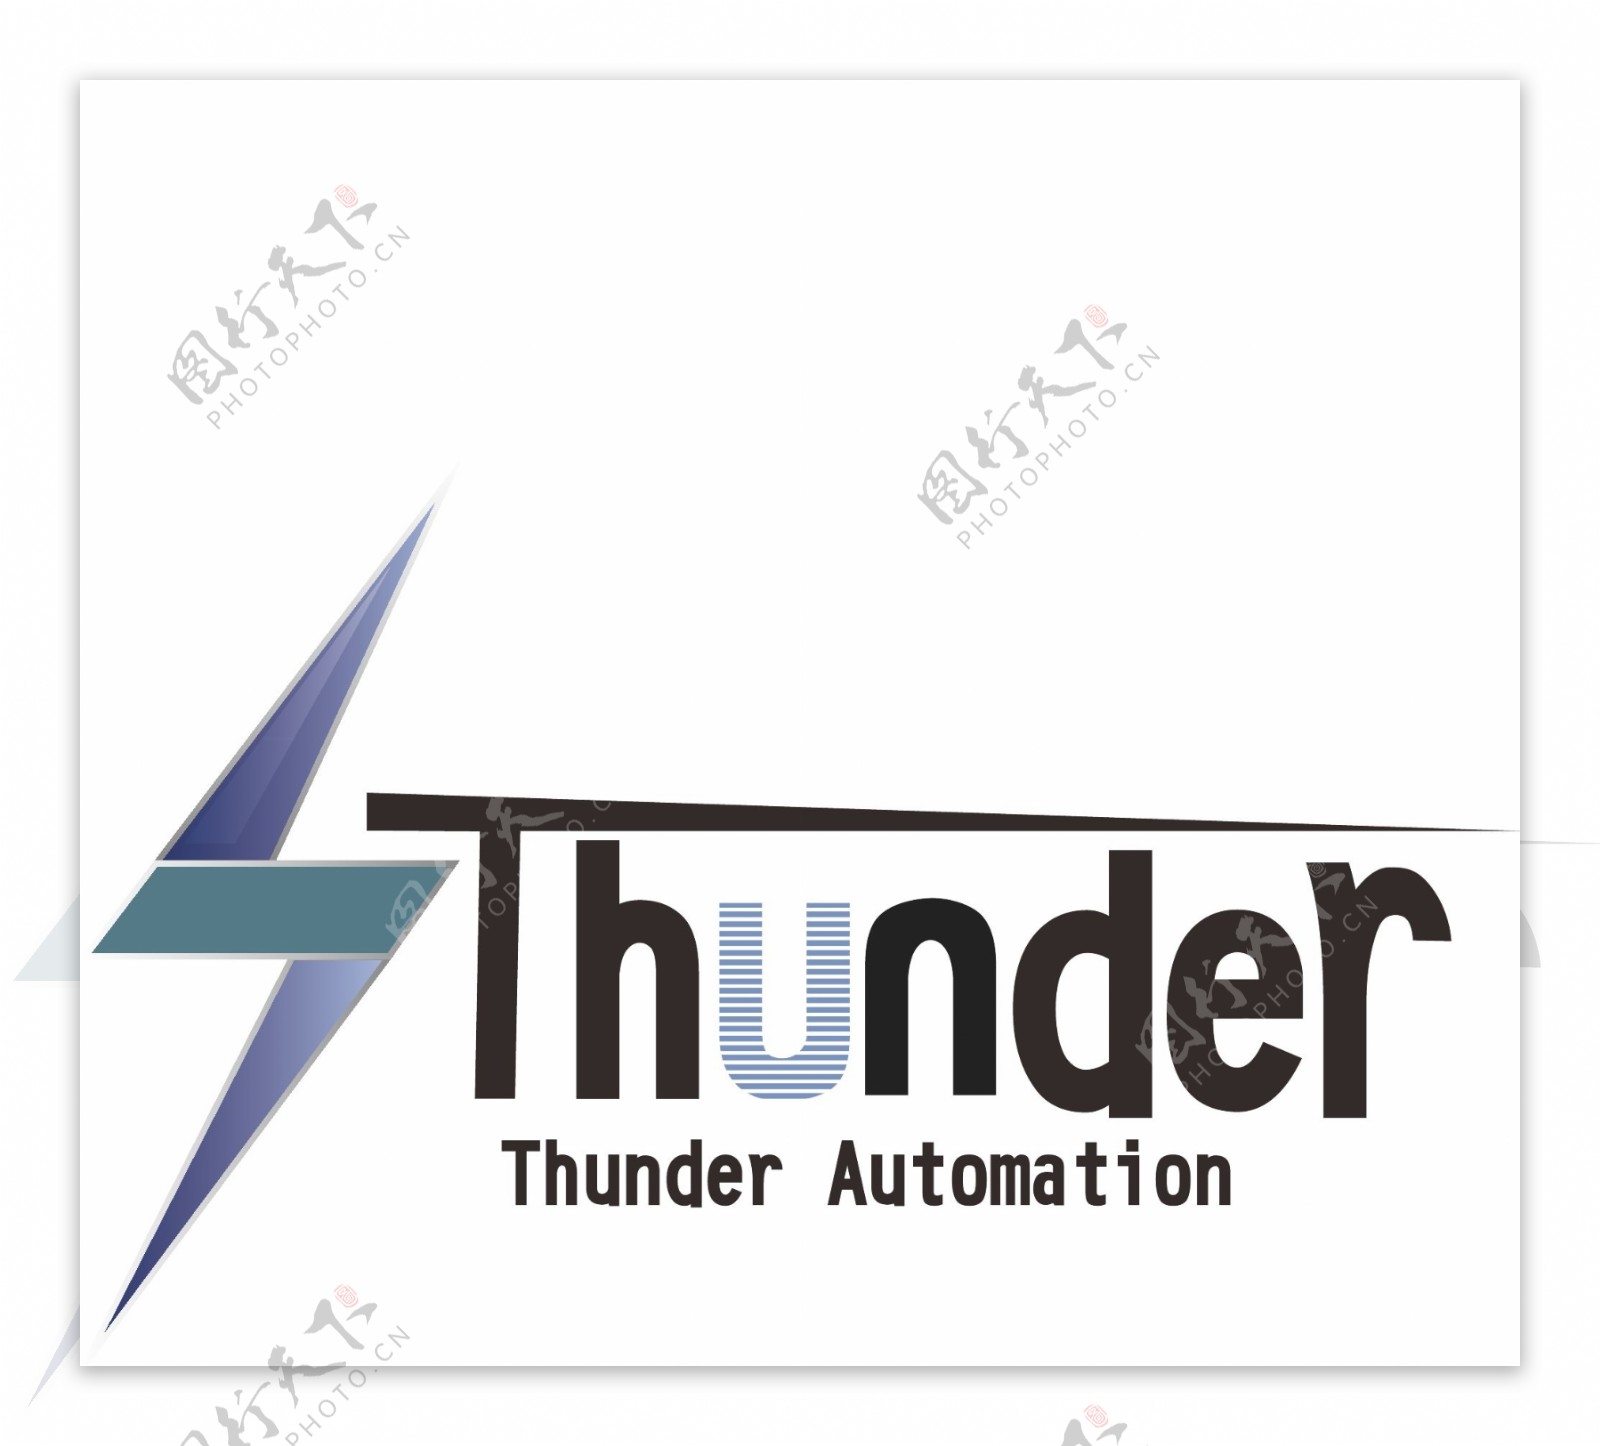 为国外一家名为thunder设计的标志